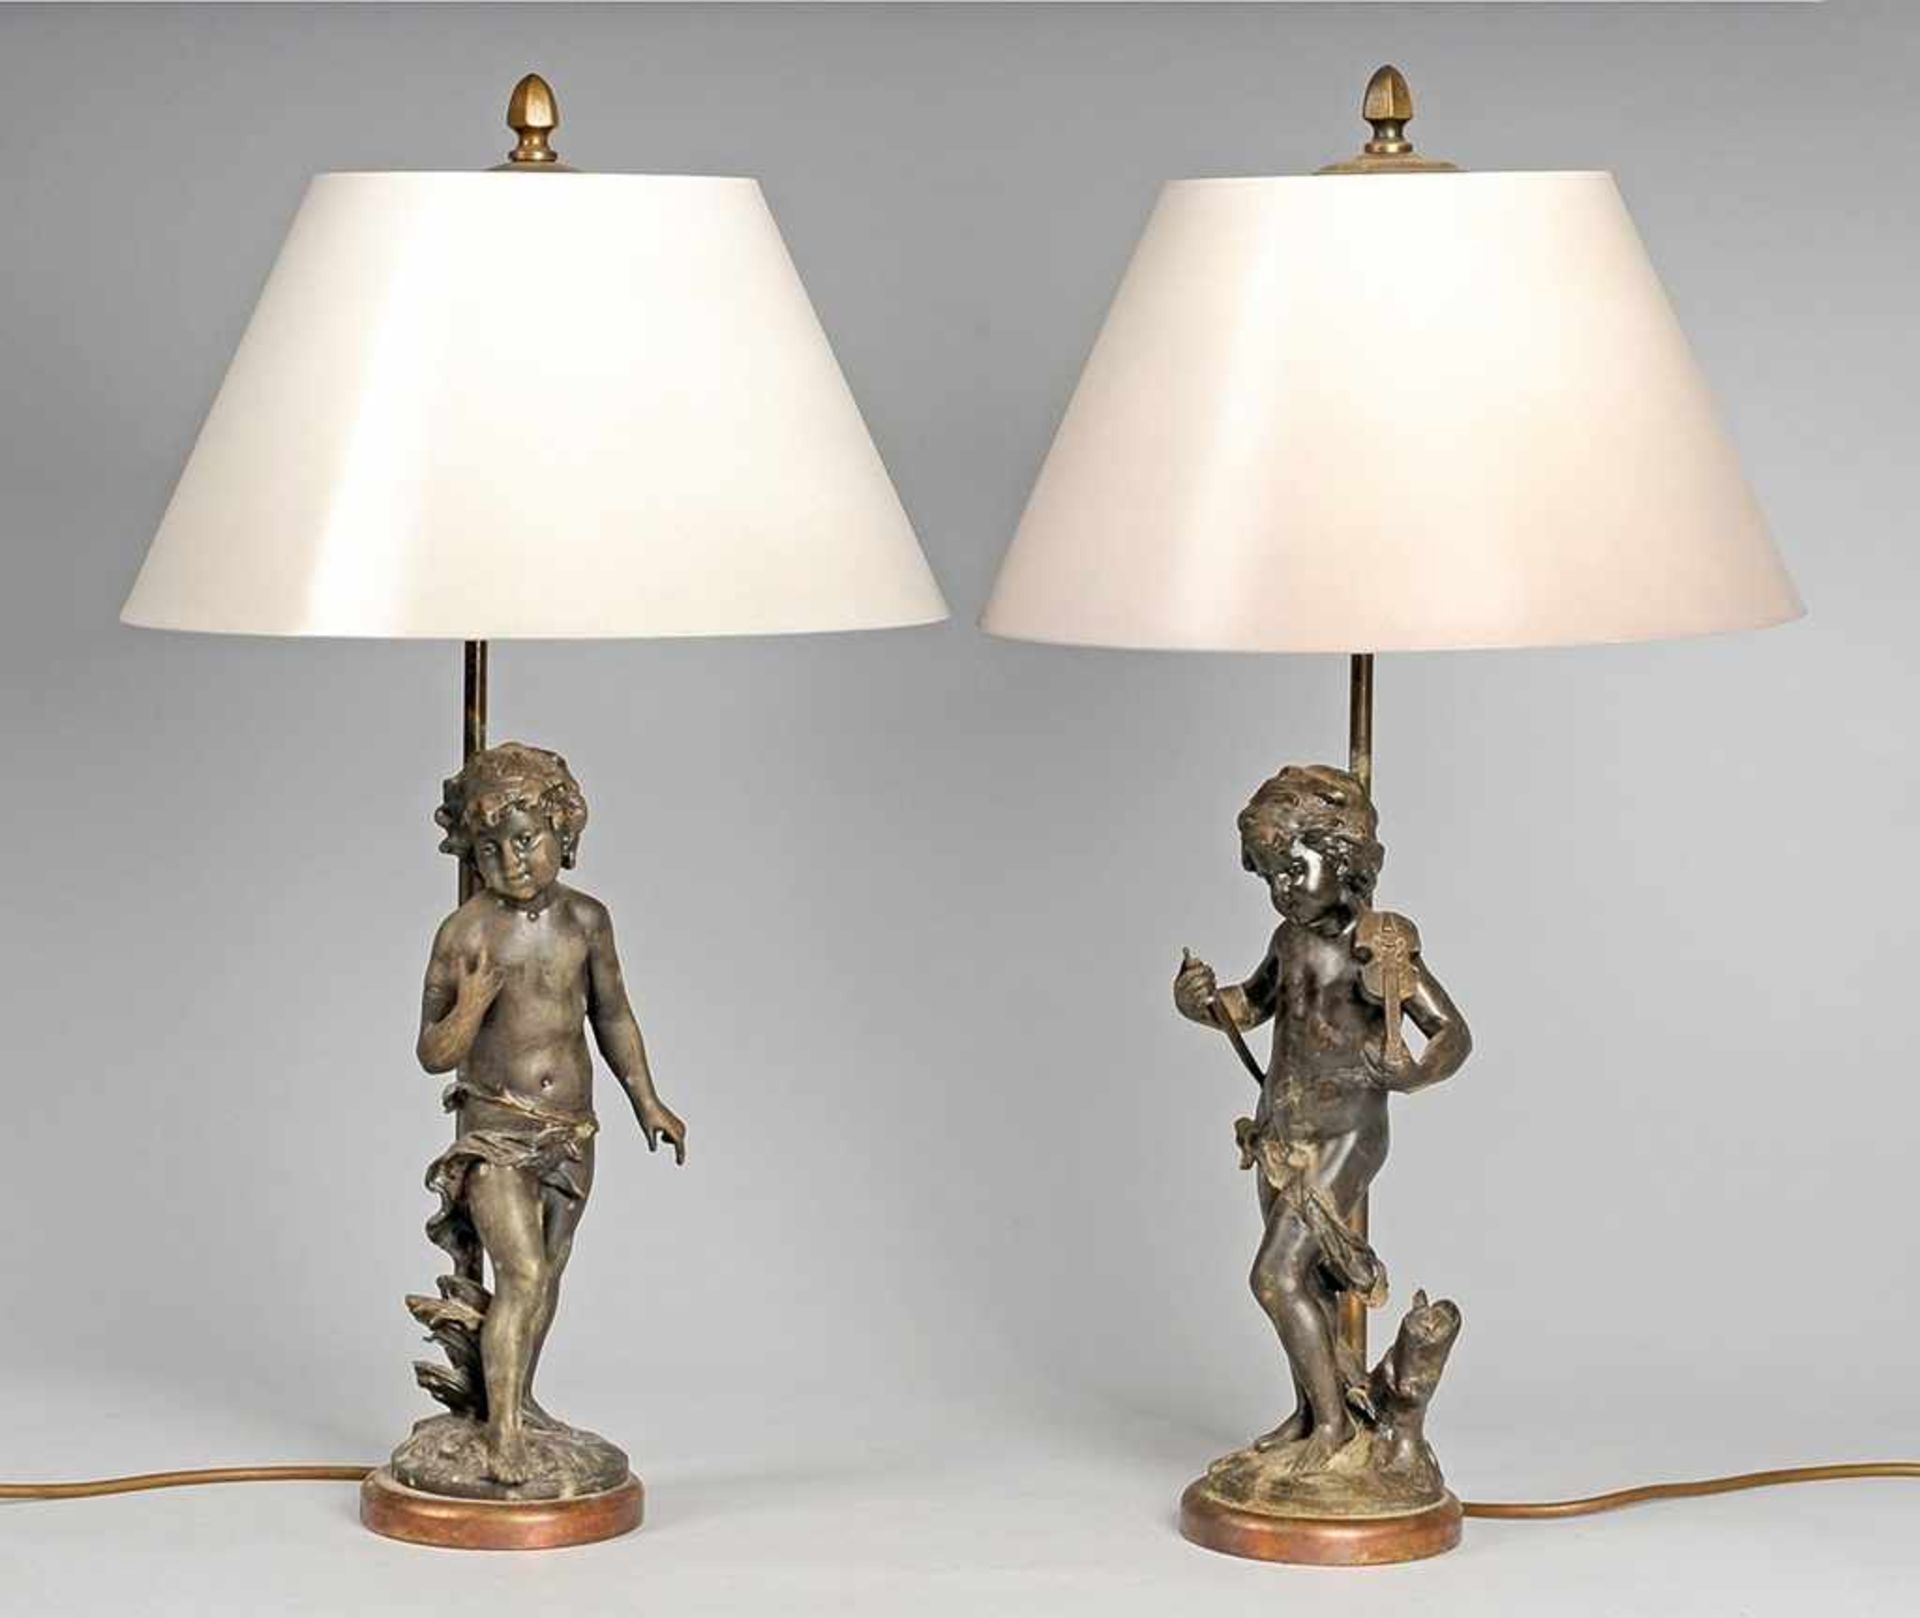 Paar figürliche Tischlampen 2-flg. Bronze, Messing. Auf rundem Natursockel stehende vollplastische